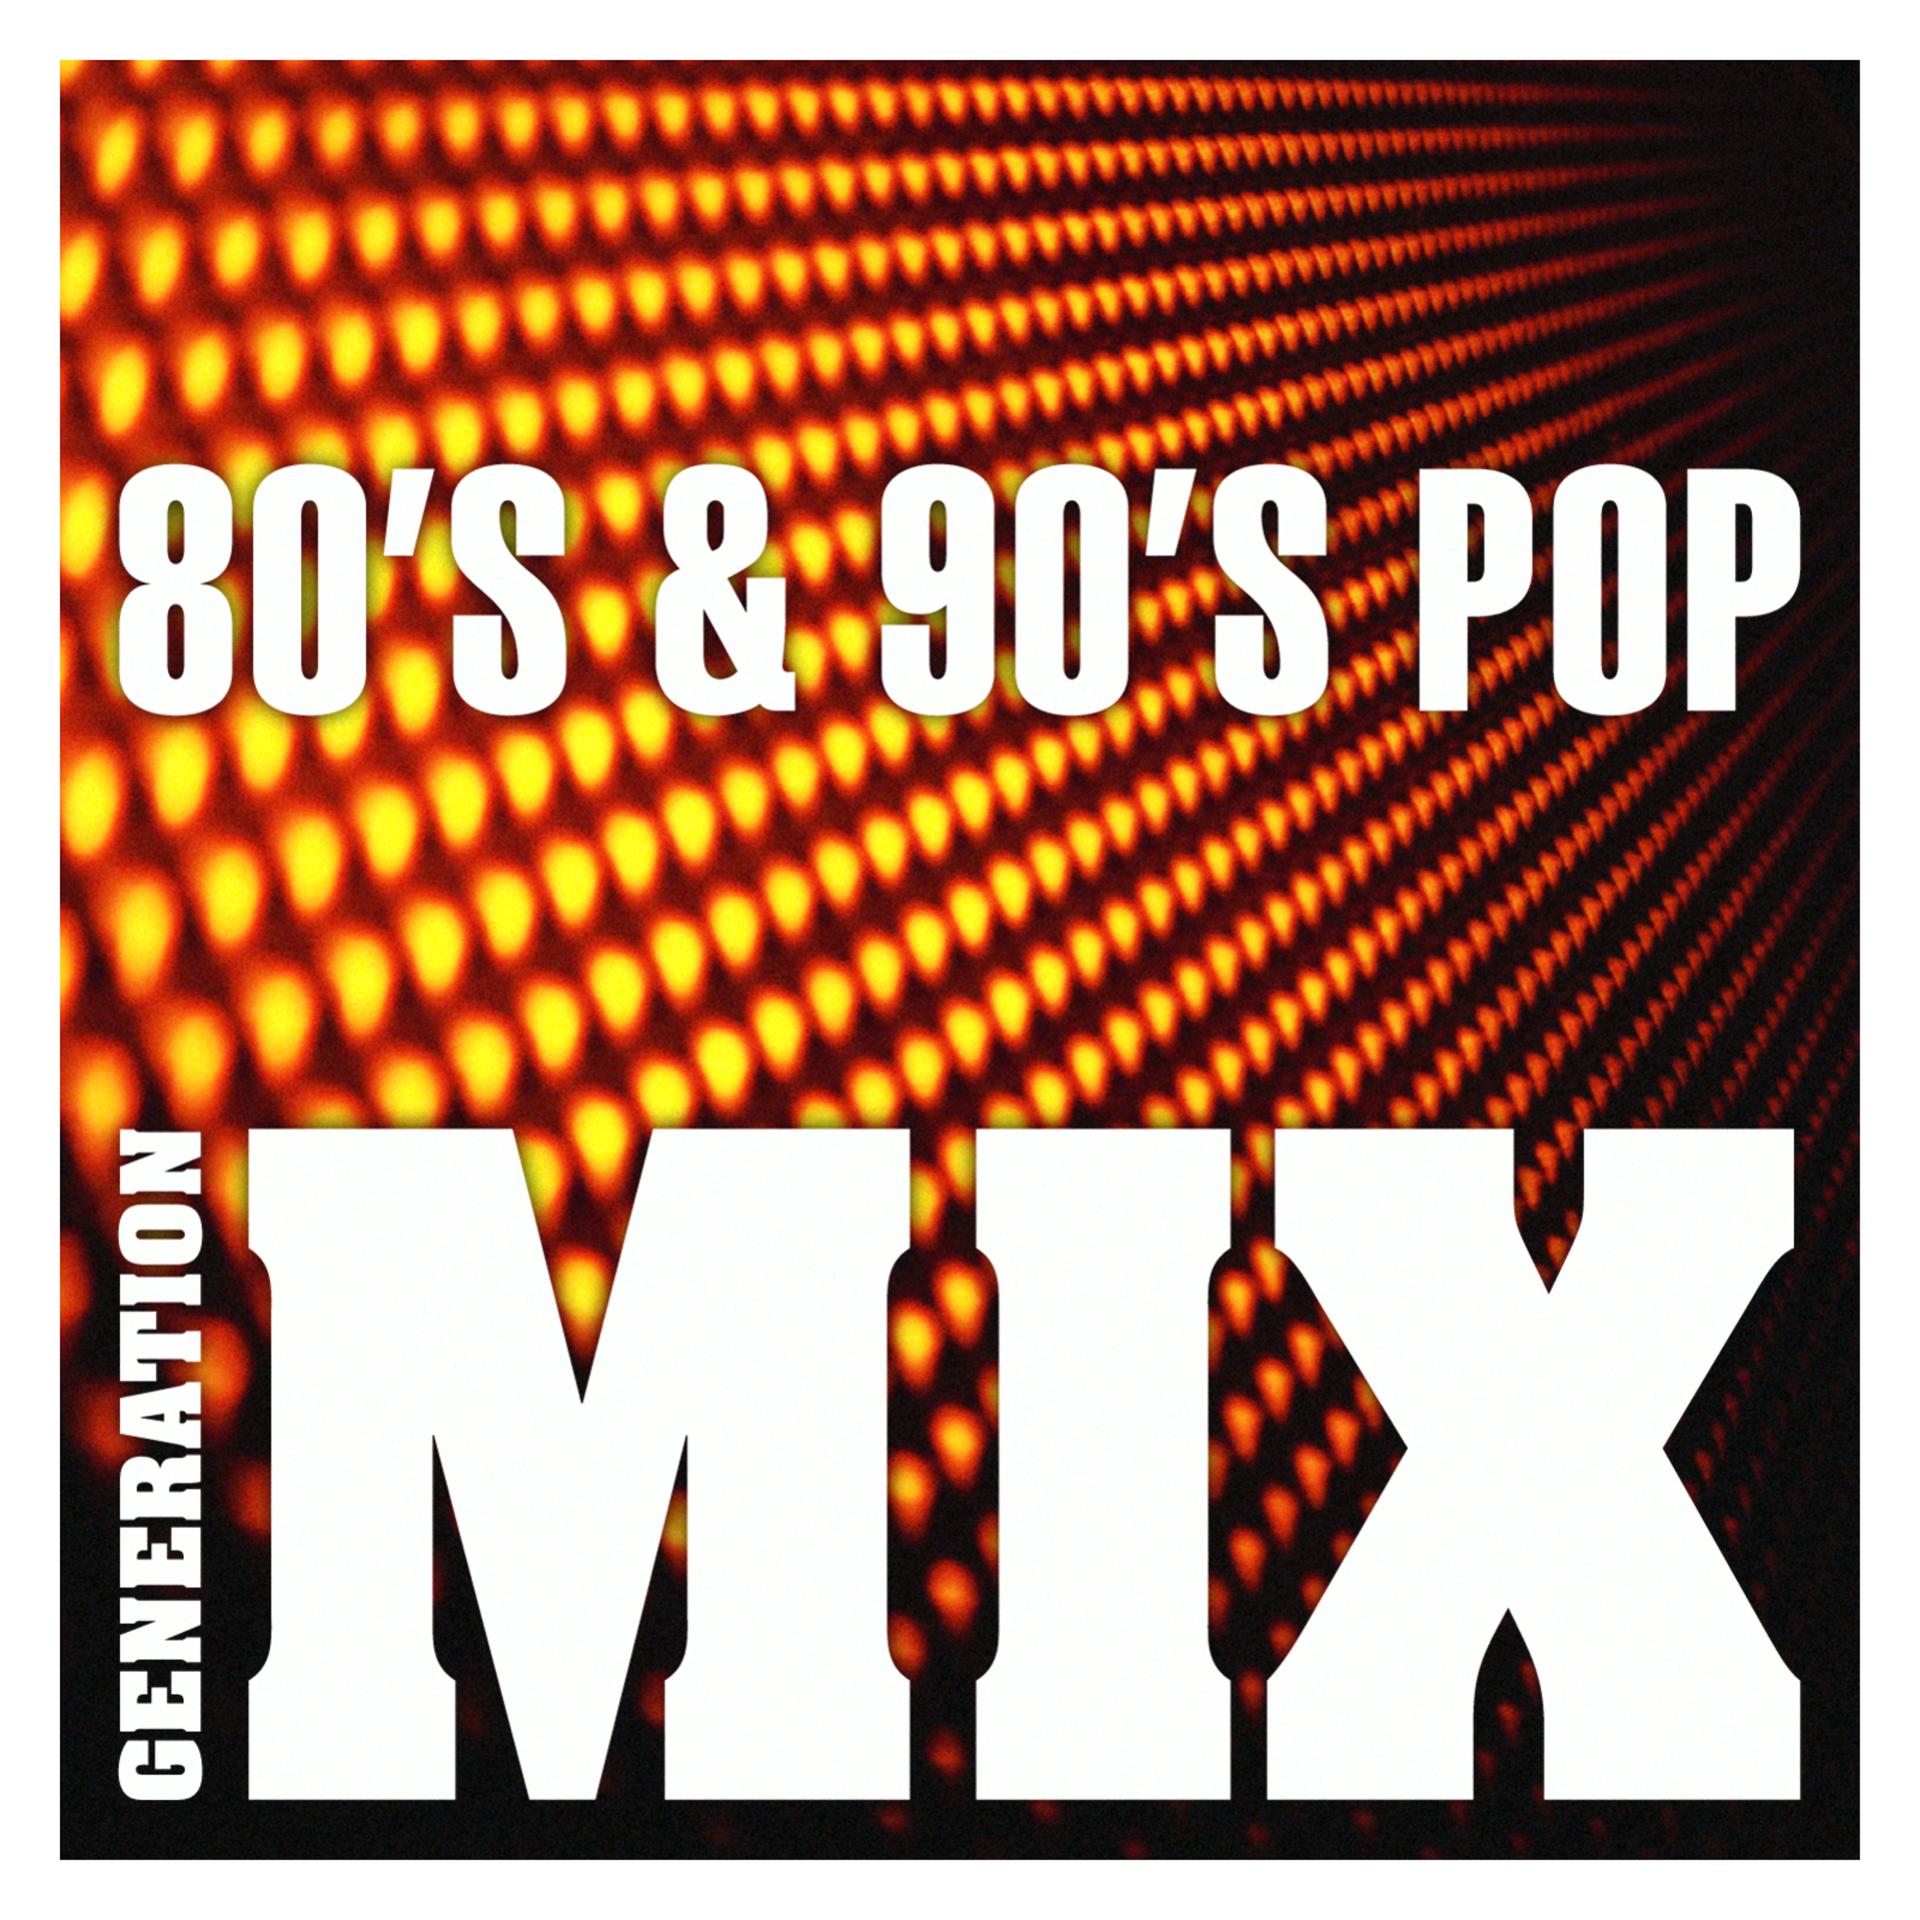 Слушать ремиксы 80 90 х. Ремиксы 80-90. Ремиксы 80-90 в современной обработке. Mix 80s. 7 Seconds 90s Pop.